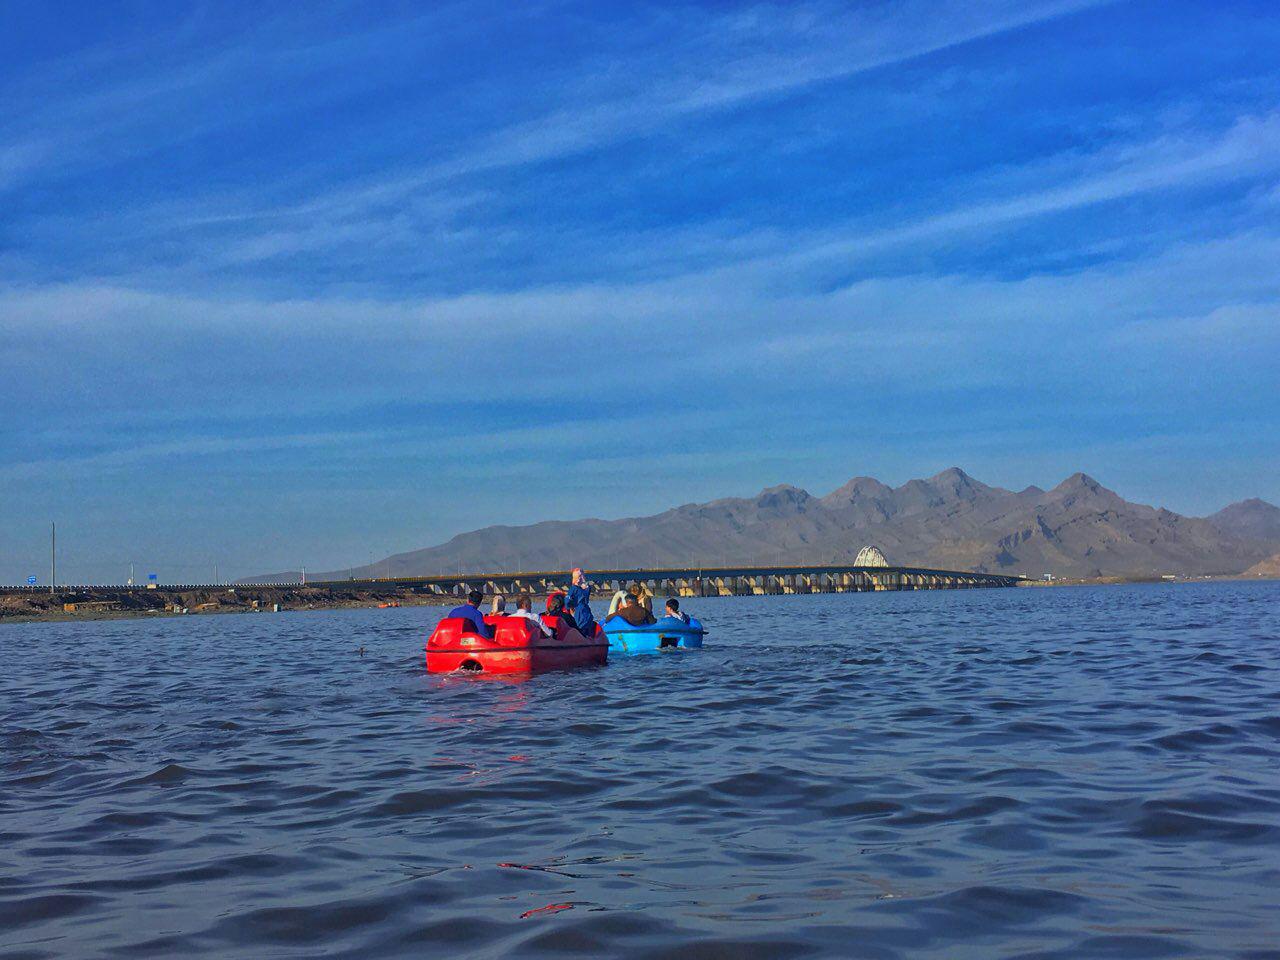 توسعه سرمایه گذاری در سواحل دریاچه ارومیه / گردشگری دریاچه ارومیه جان دوباره گرفته است